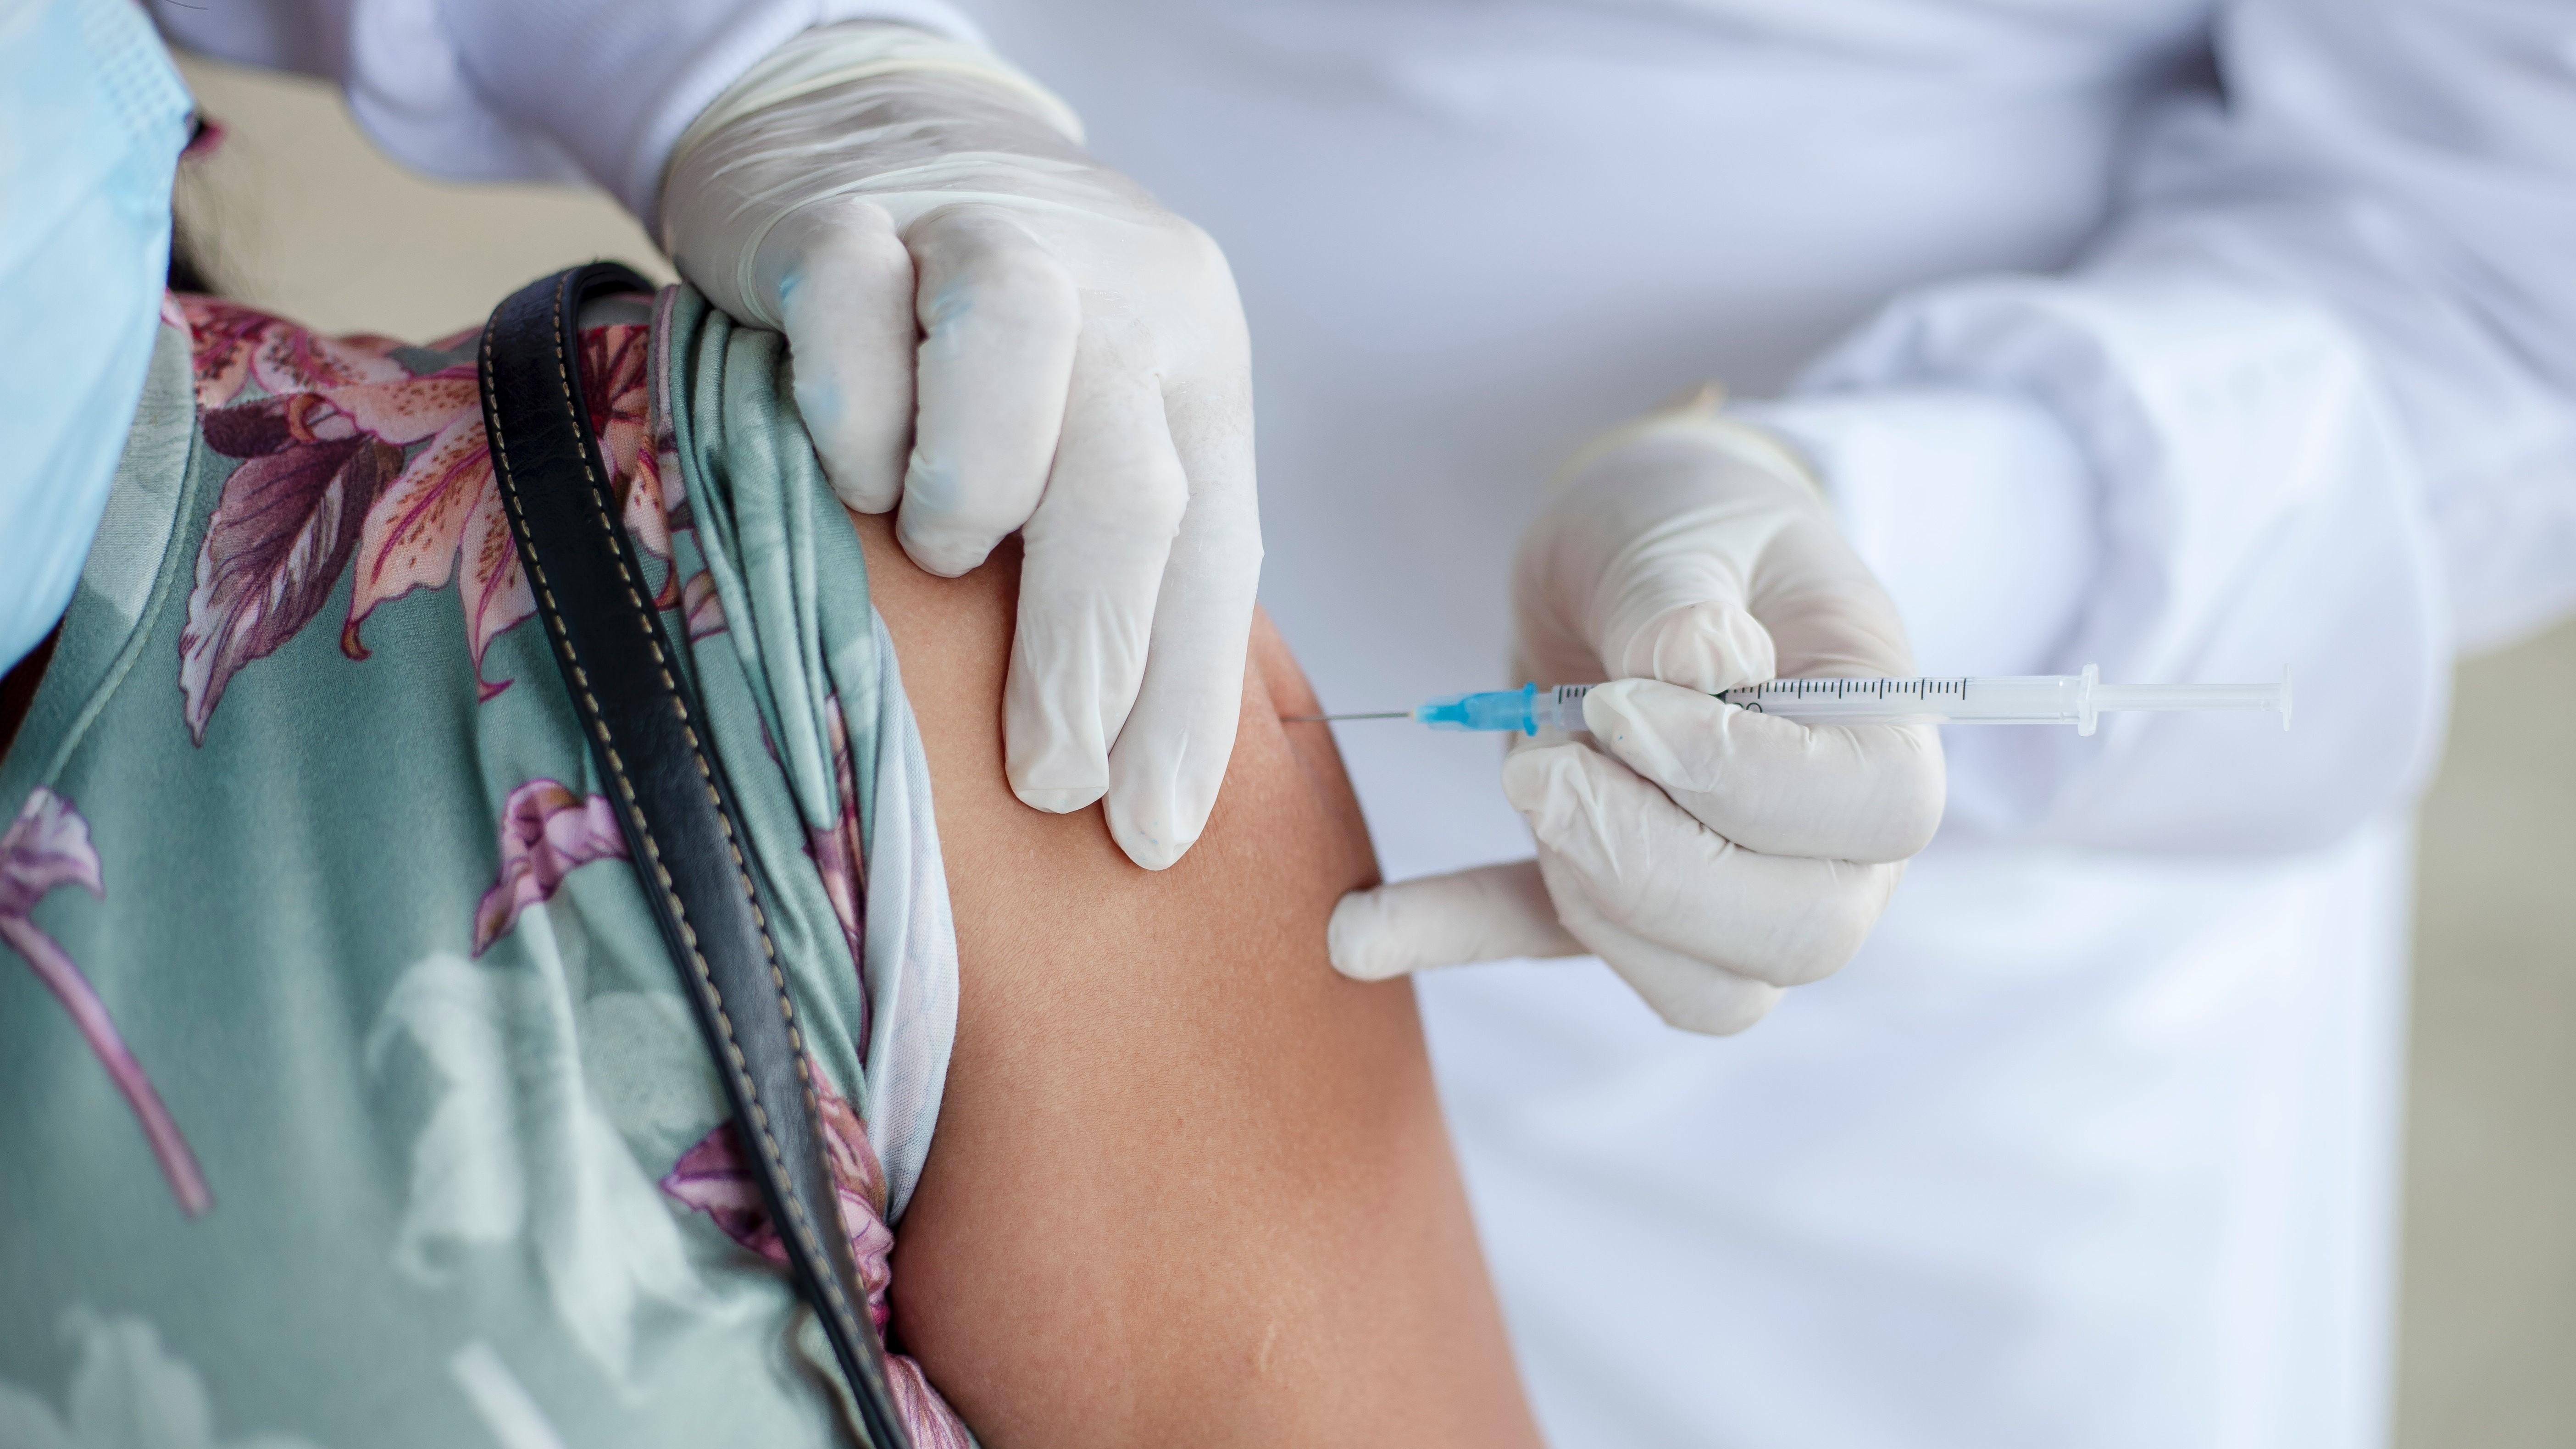 Garance odškodnění za újmu po očkování proti covidu-19 byla falešným vzbuzením důvěry